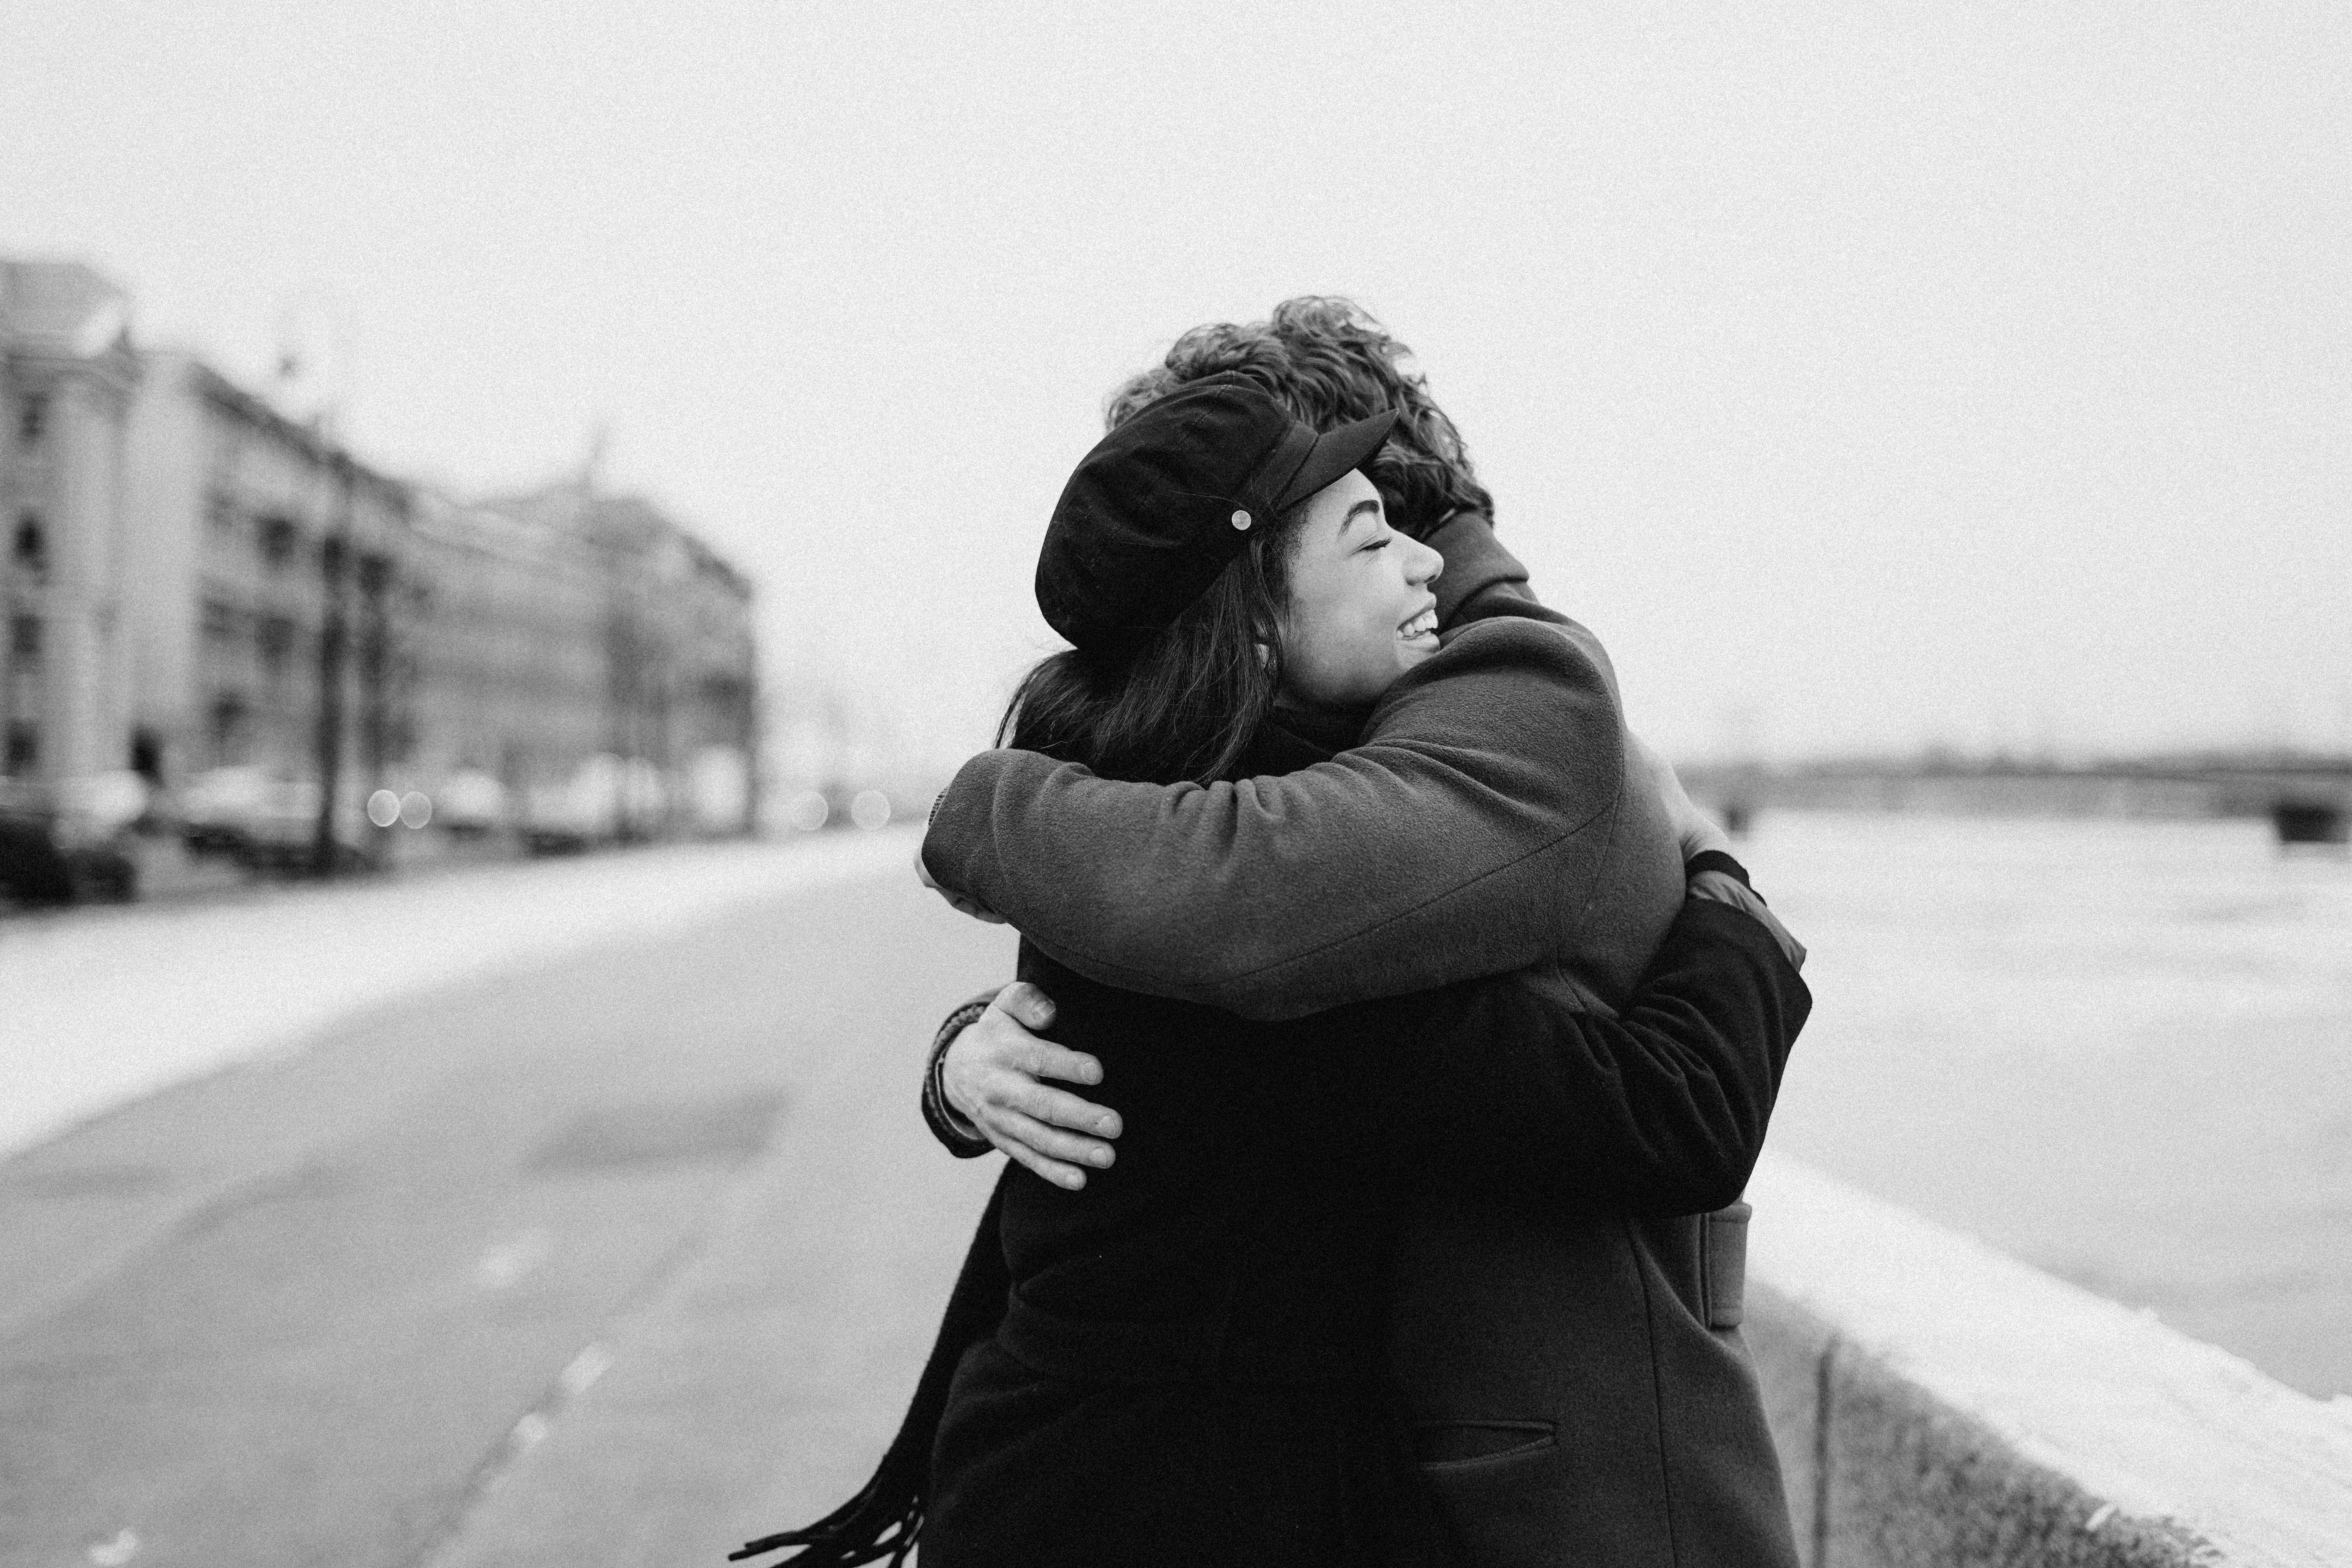 Llojet e përqafimeve, ja çfarë zbulojnë për ndjenjat e personit